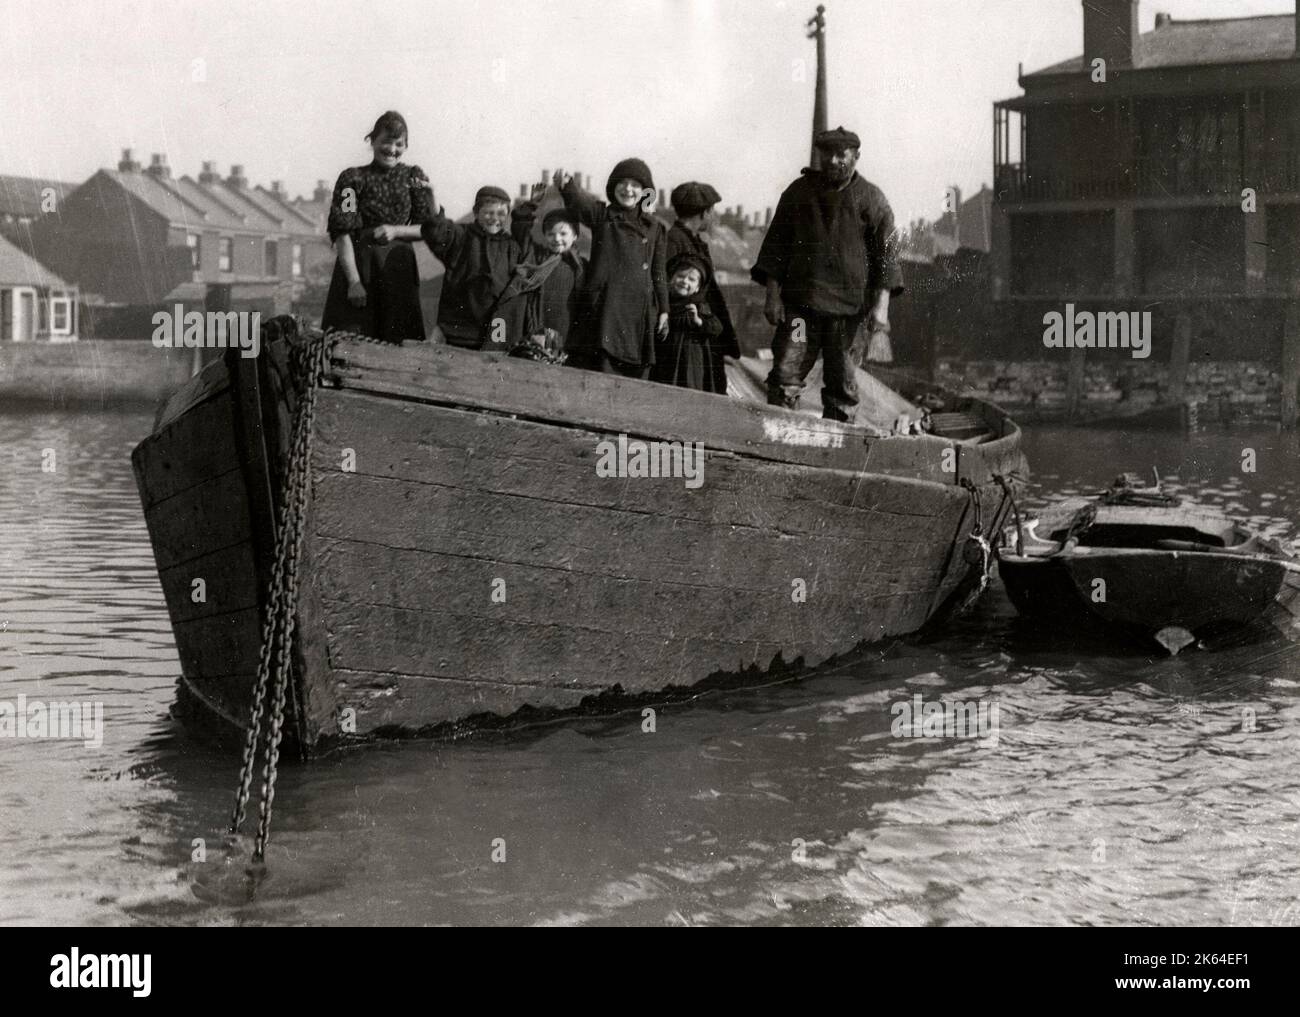 Frühes 20. Jahrhundert Vintage Pressefoto - Familienleben an Bord eines Bootes, Sozialgeschichte, Armut, England, 1920s Stockfoto